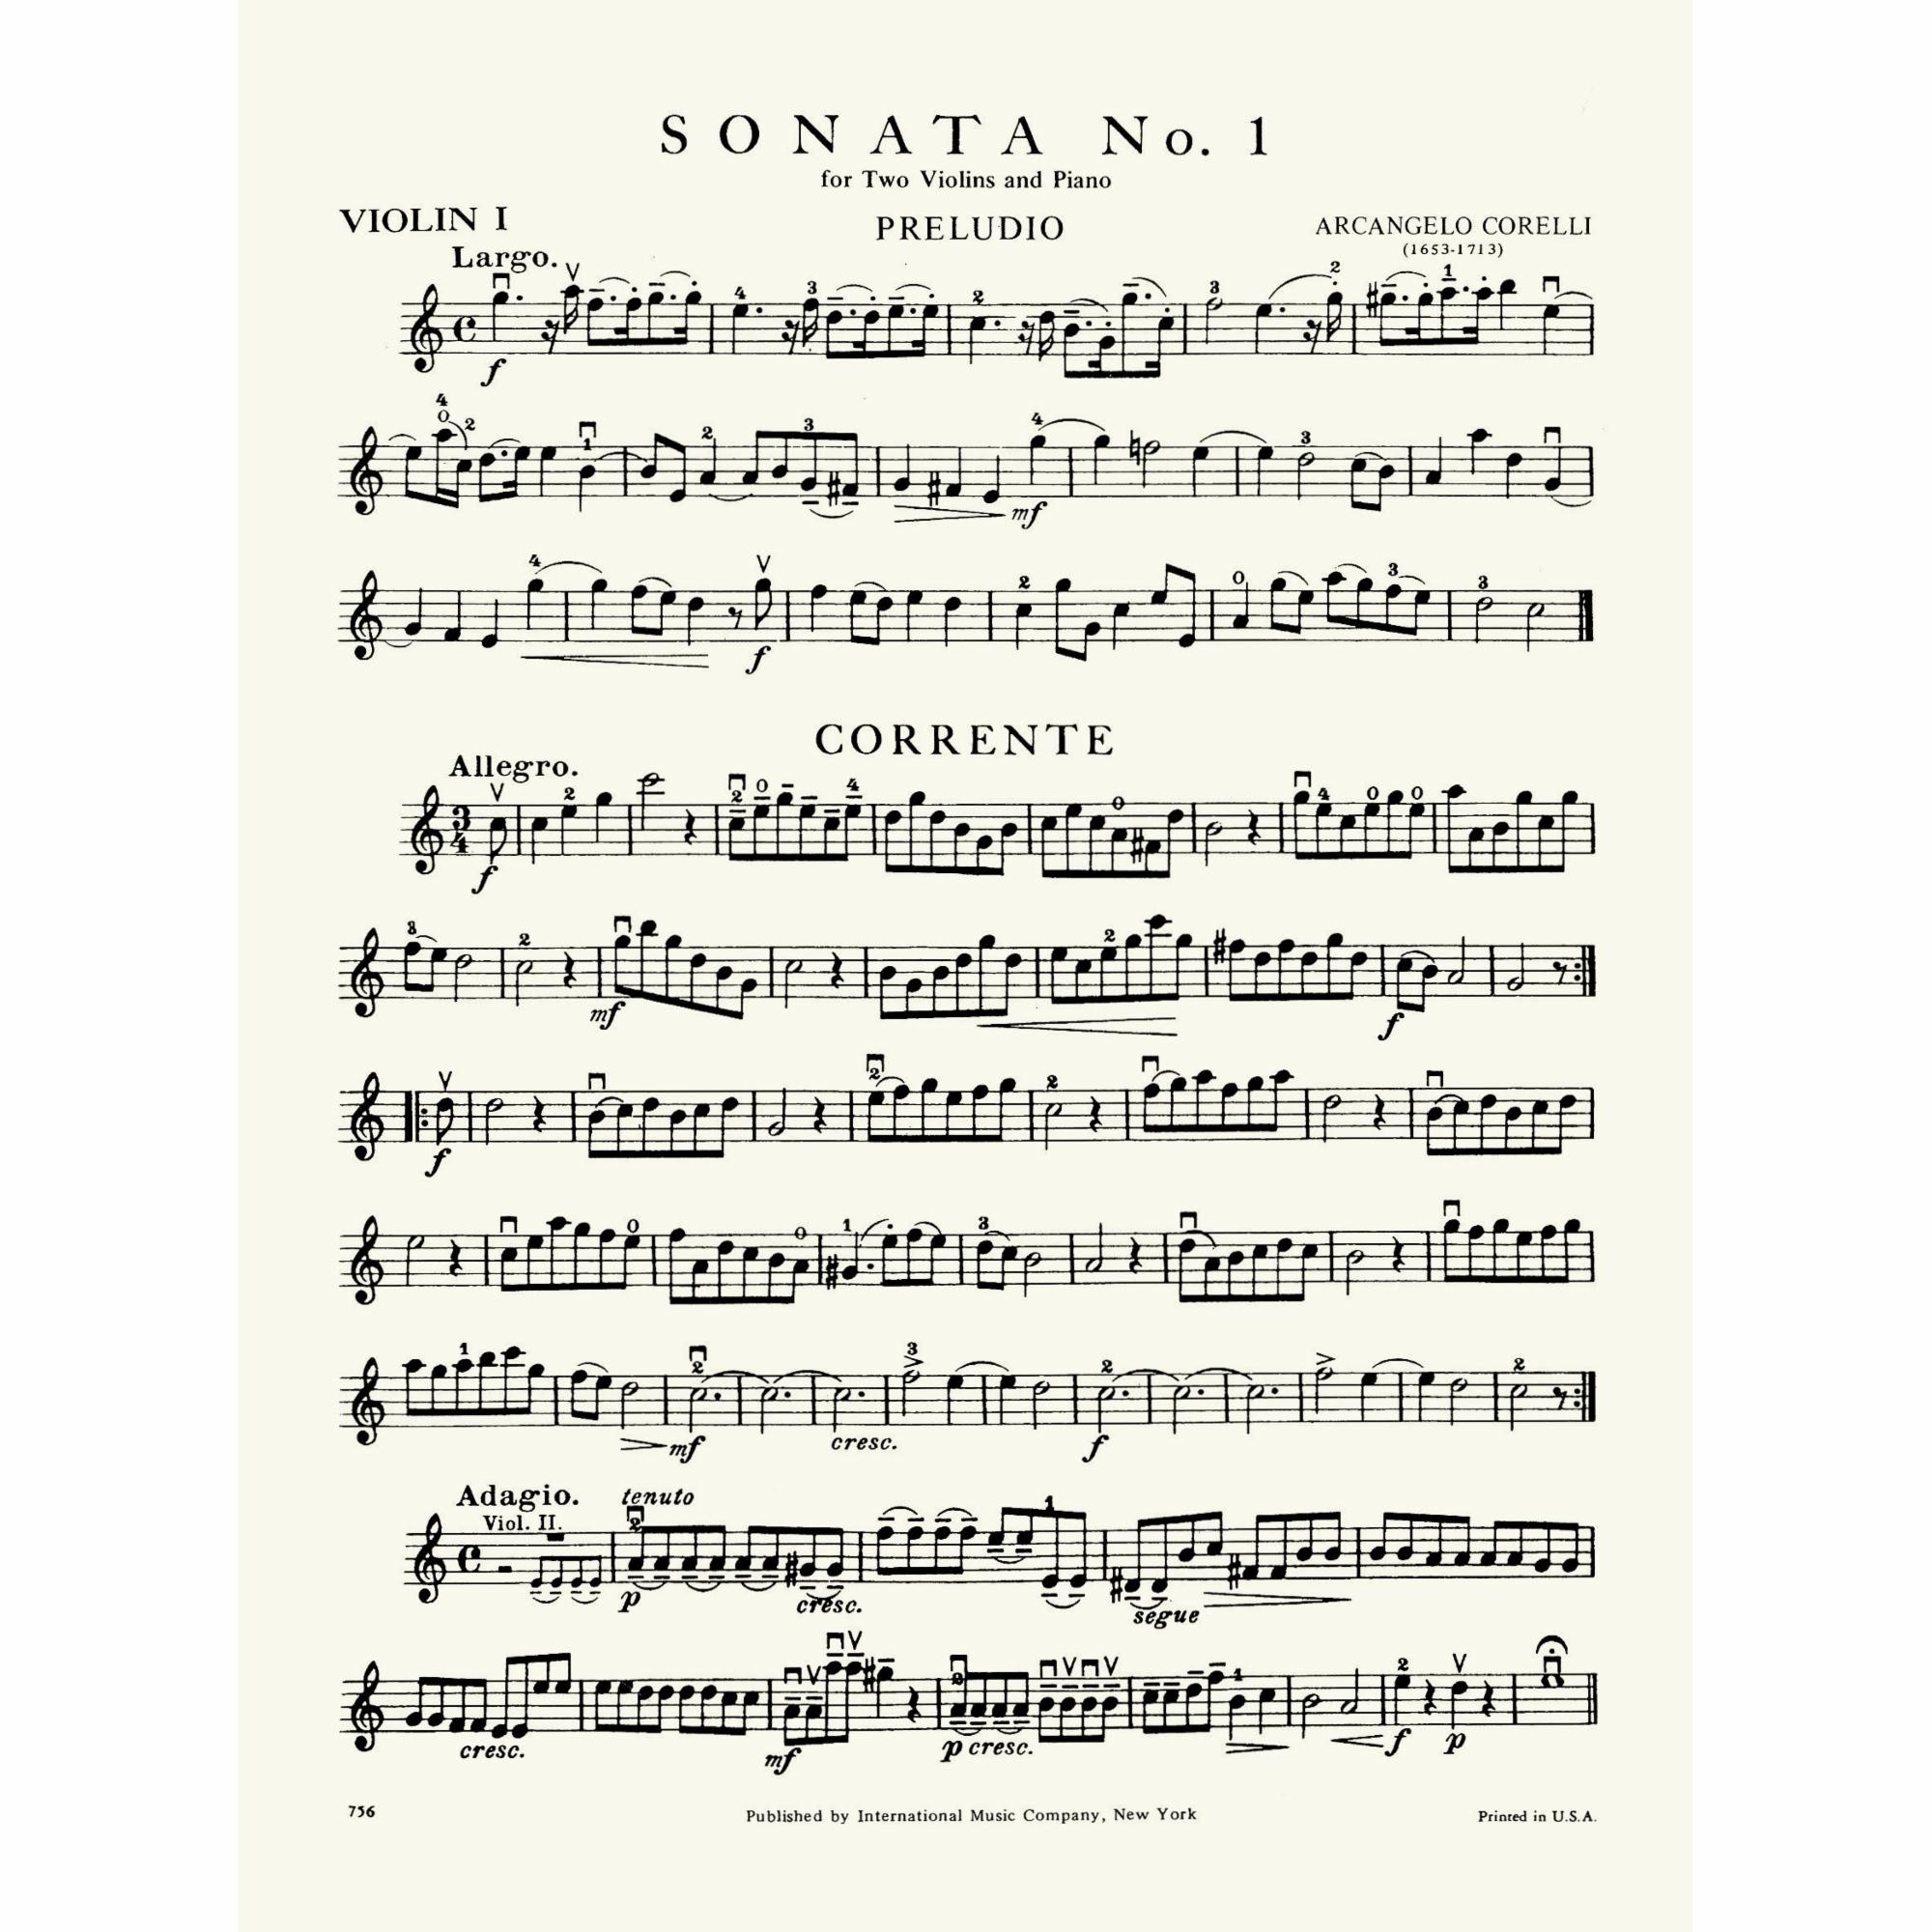 Sample: Violin I (Pg. 1)